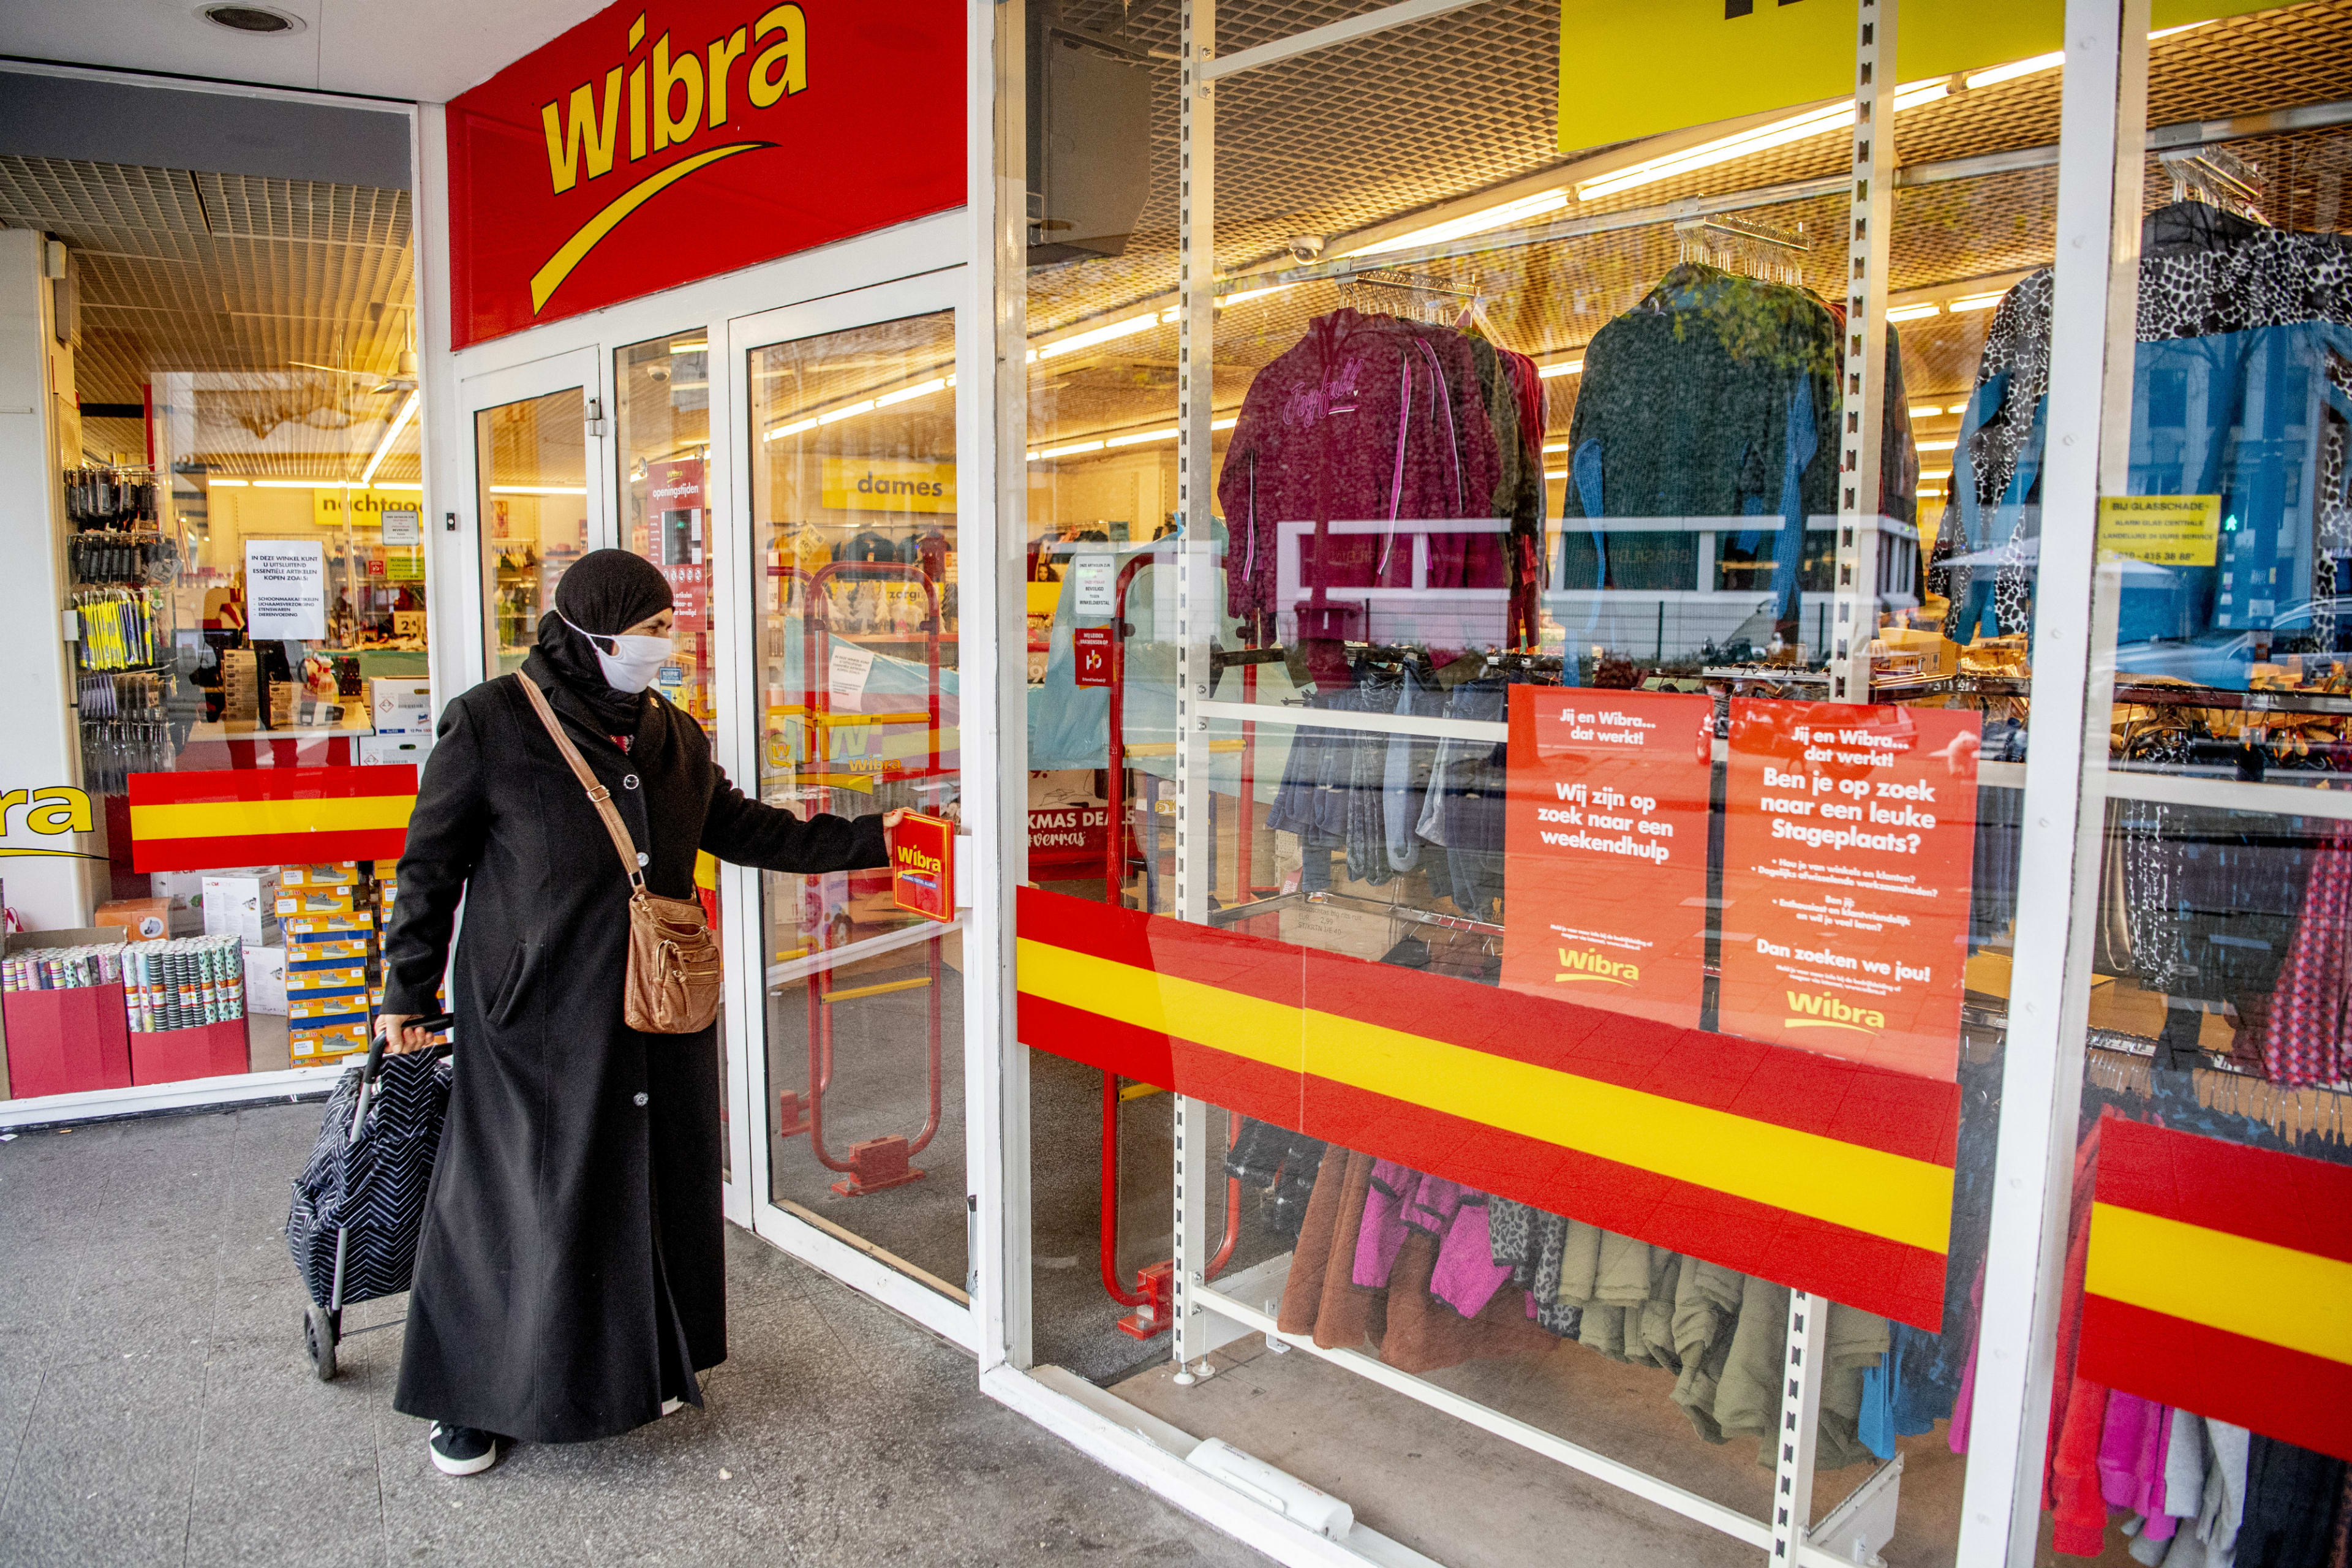 Even naar de Wibra zit er niet meer in: winkels blijven rest van lockdown gesloten